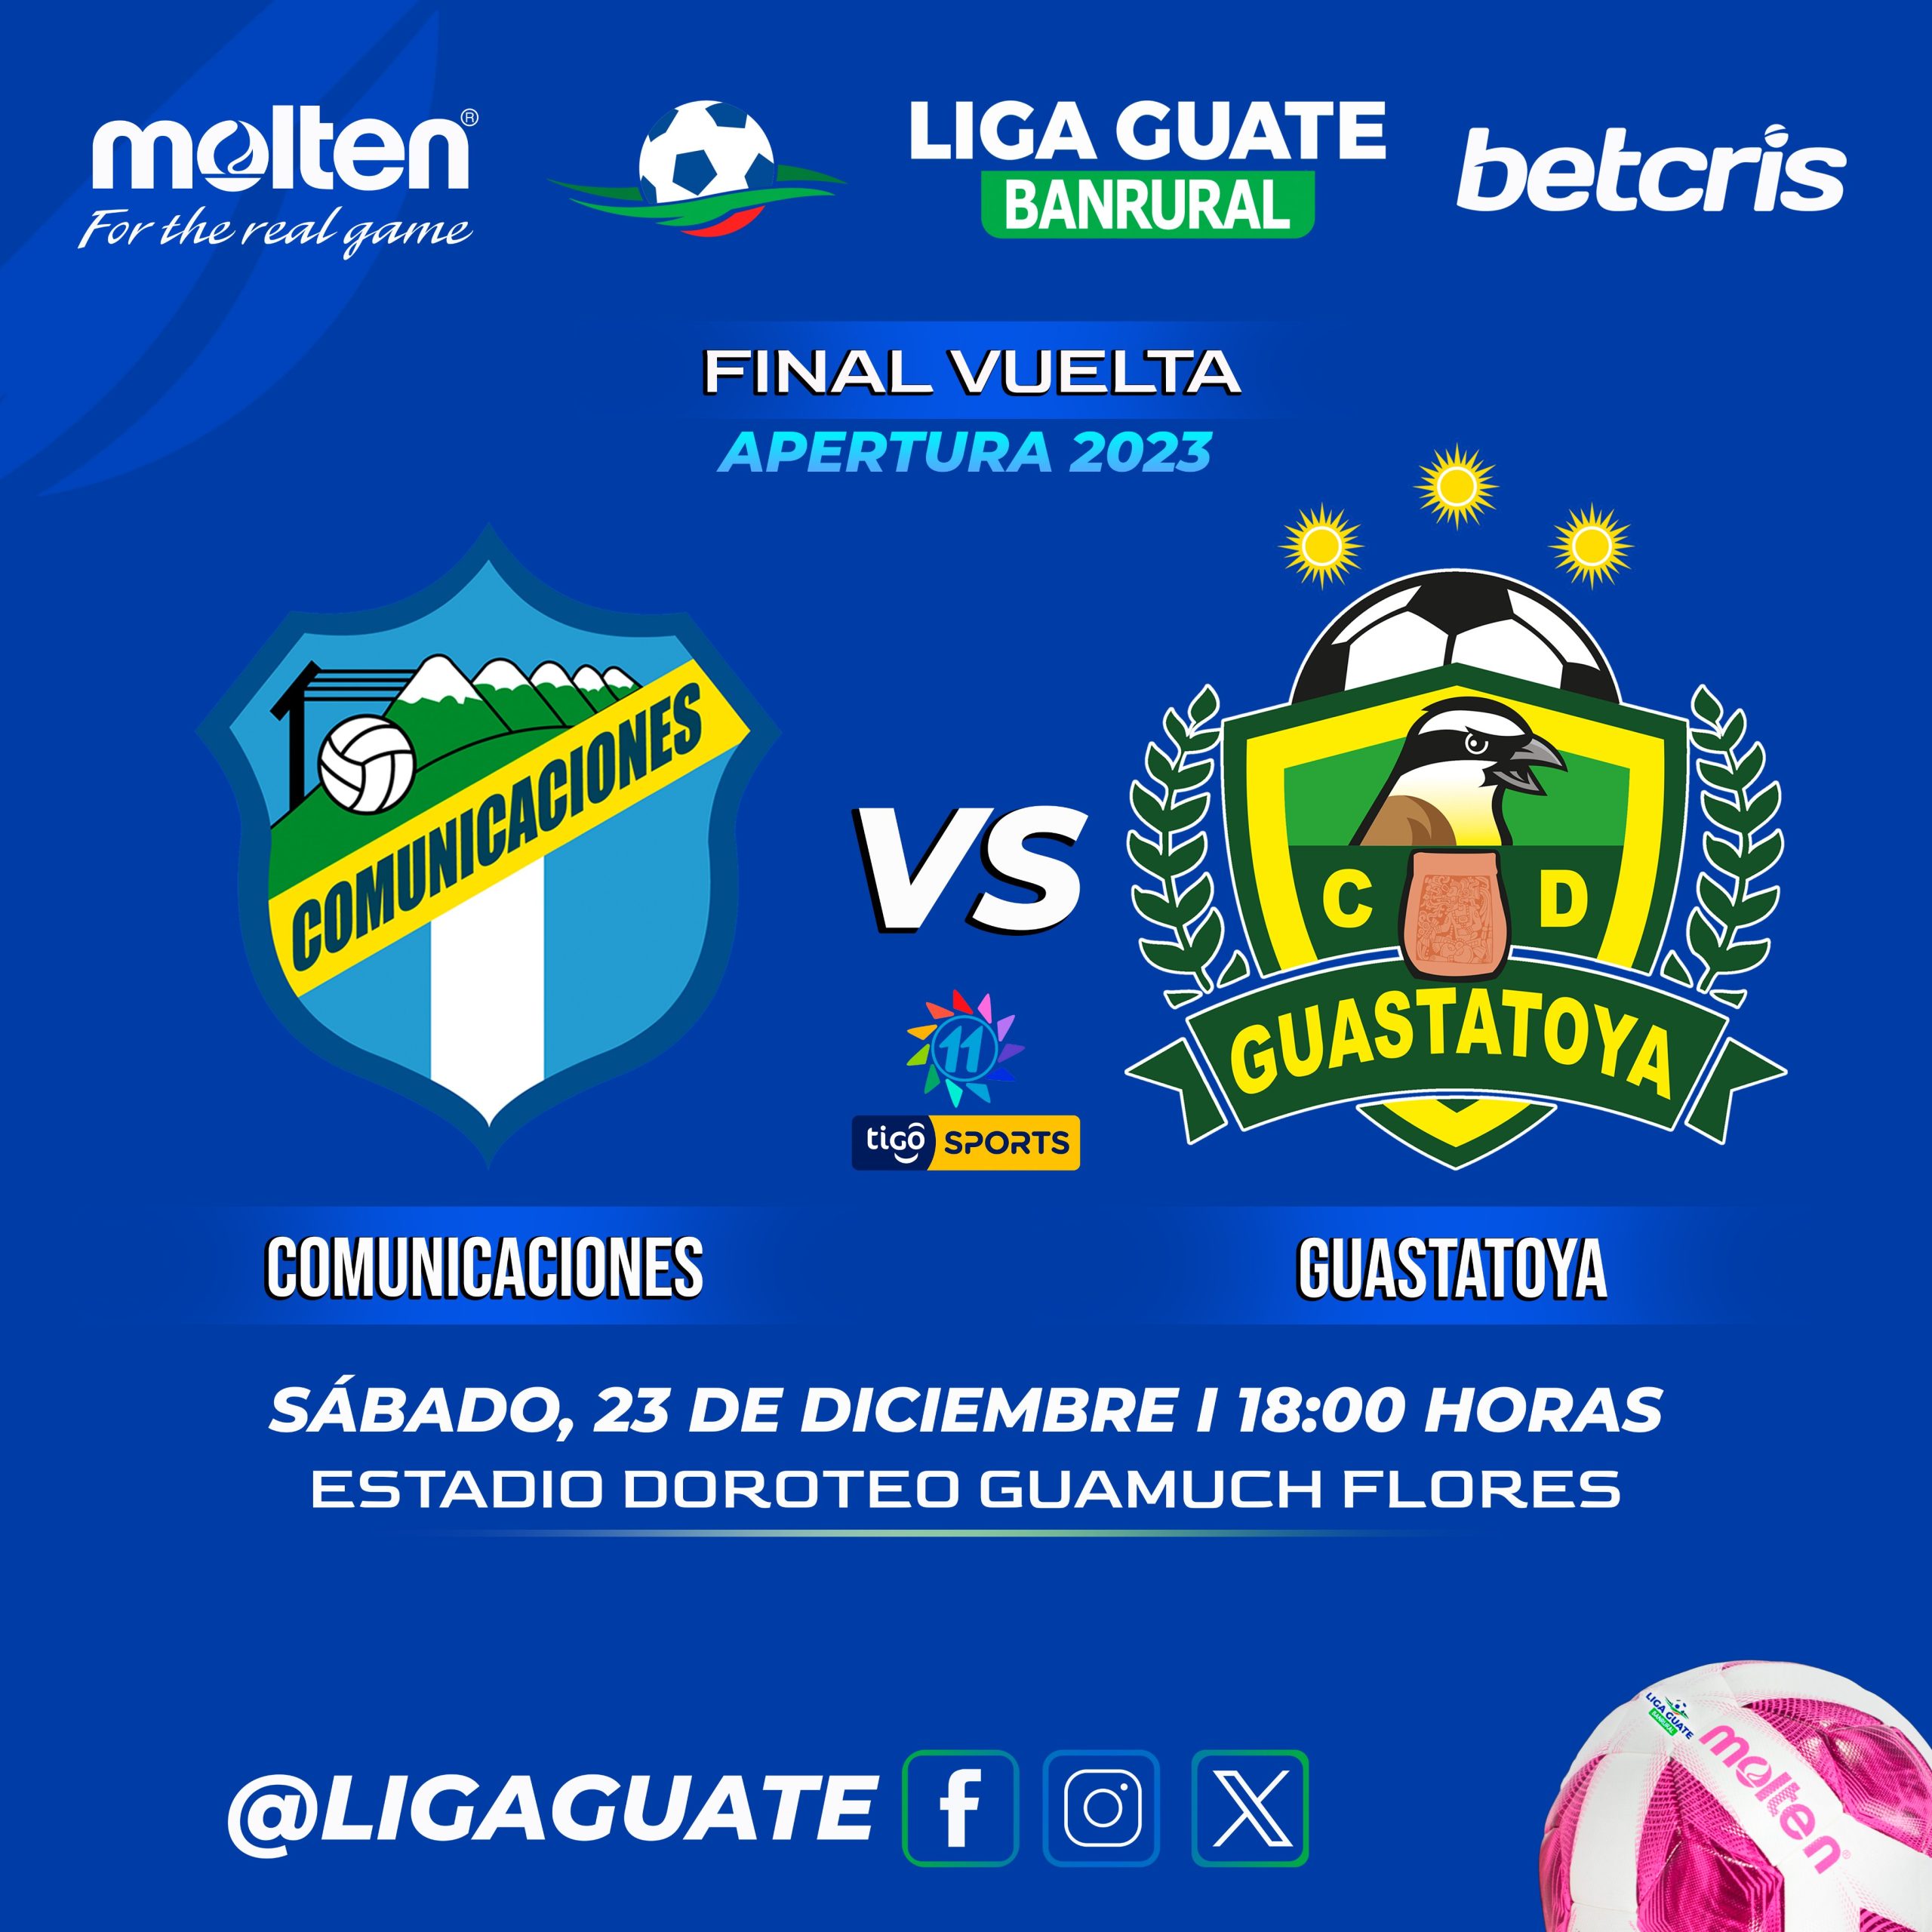 Gran final del Torneo Apertura 2023 de Guatemala, Comunicaciones vs Guastatoya